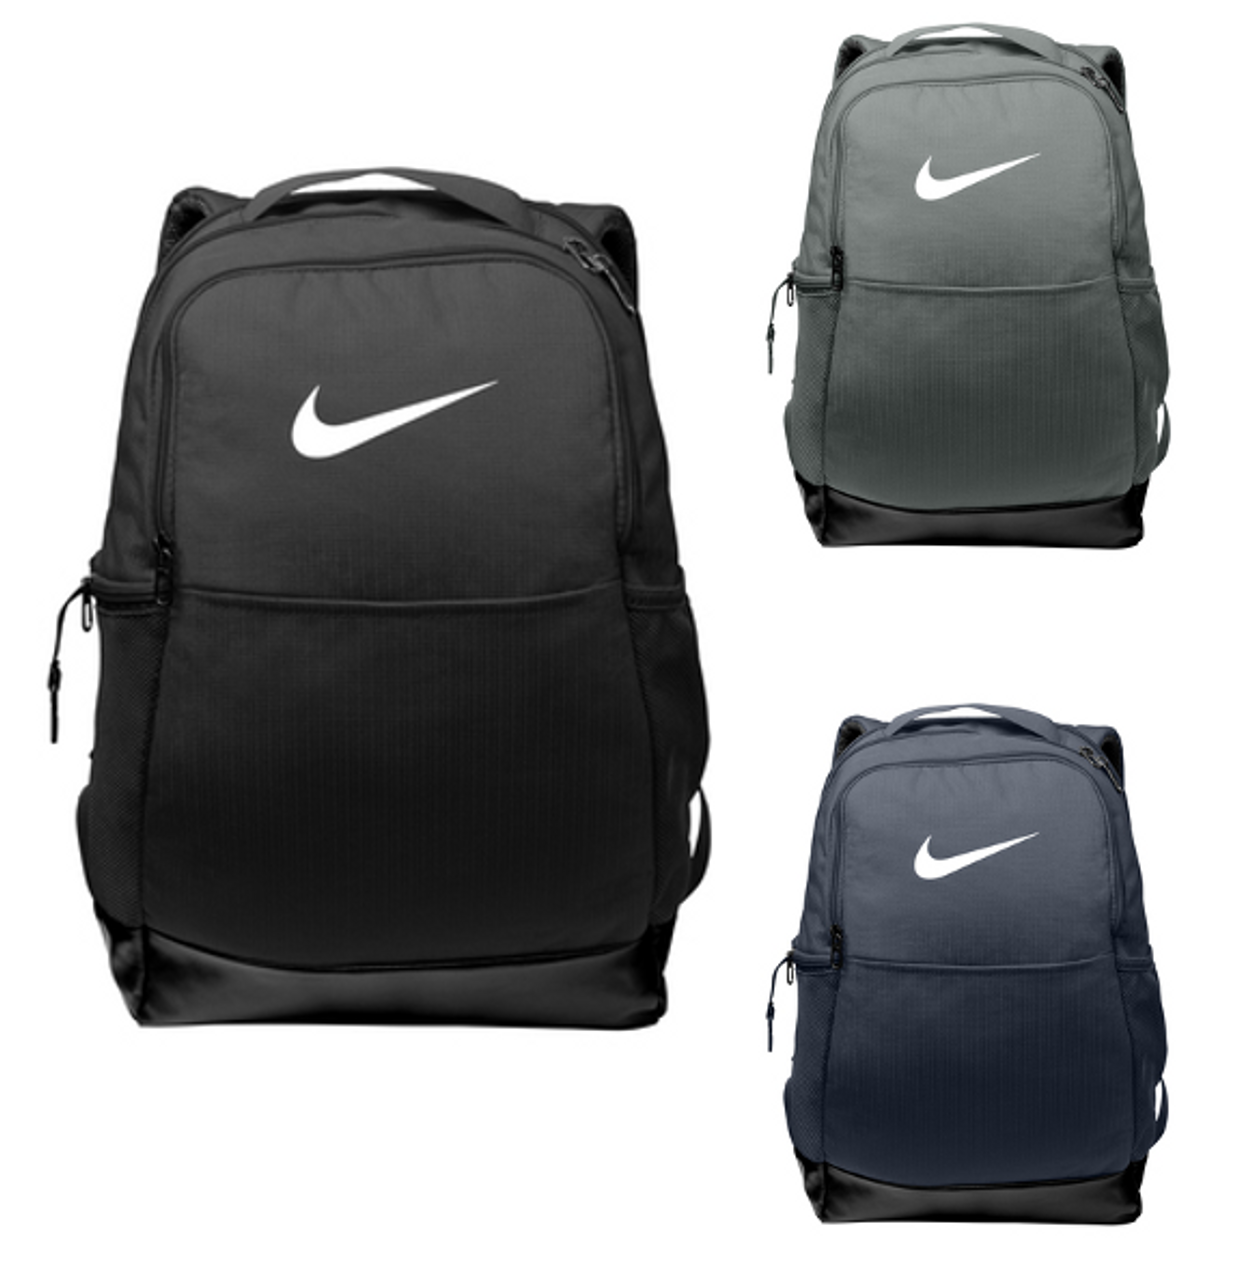 Nike Brasilia Medium Backpack - Customizable - Customizable